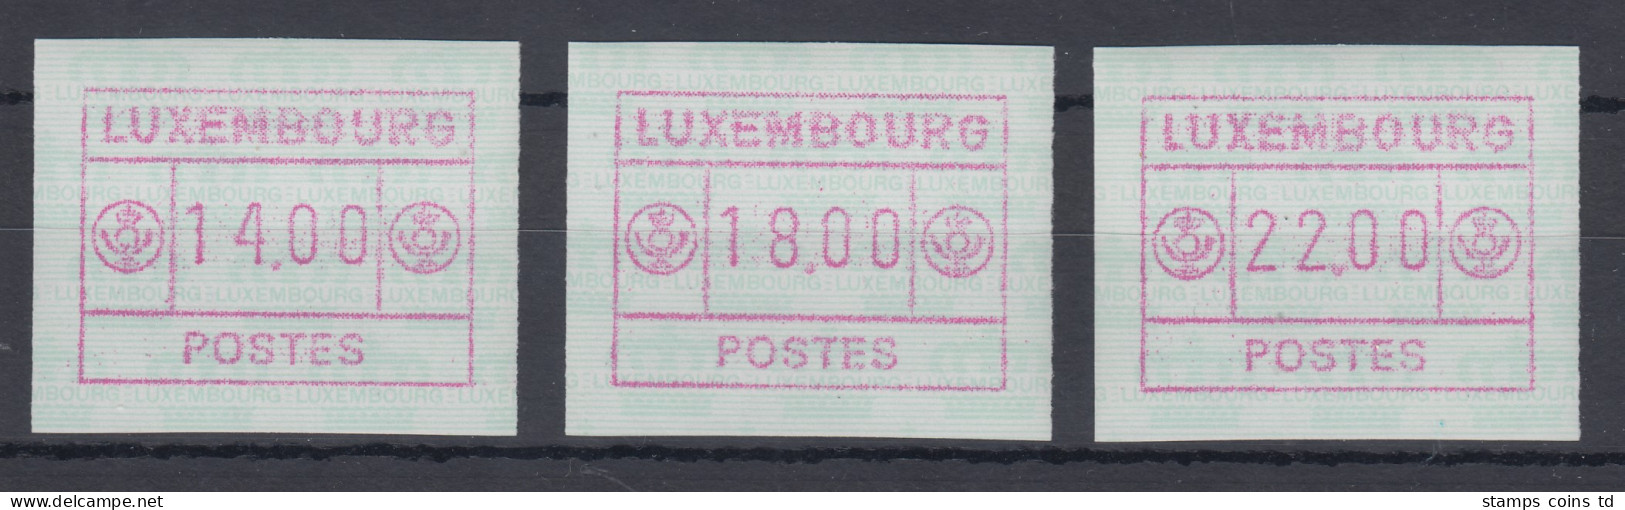 Luxemburg ATM Kleines POSTES Mi.-Nr. 2 Satz 14-18-22 Farbe Rotlila ** - Automatenmarken